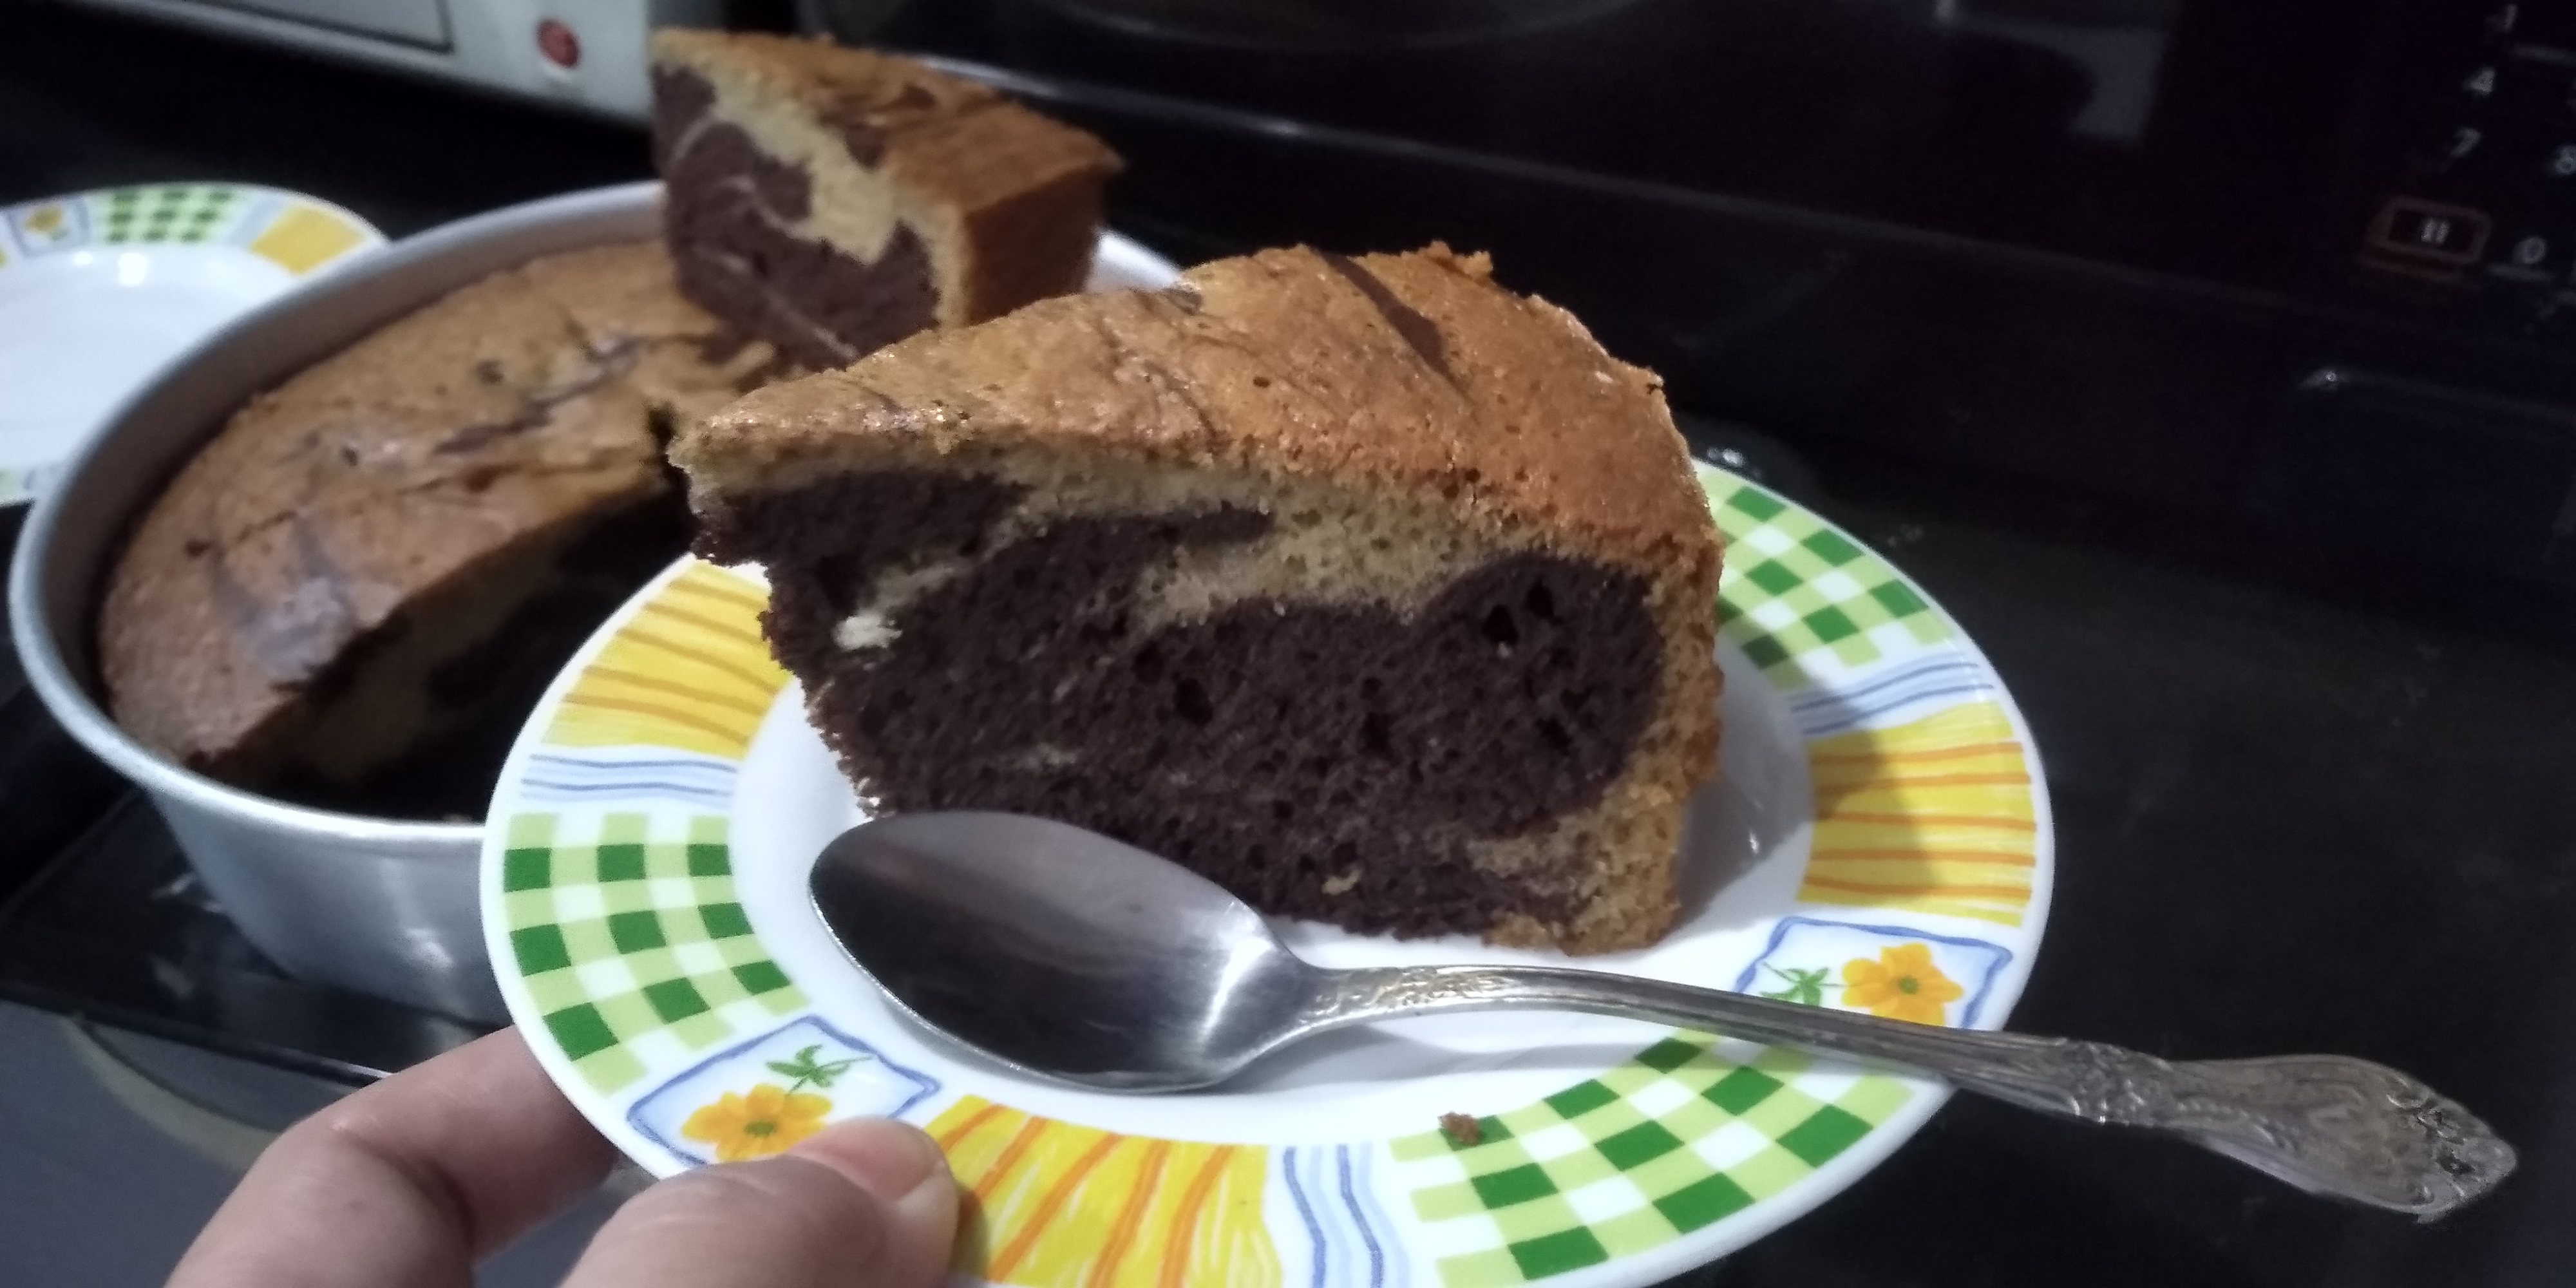 Pisang resepi coklat kek Resepi Kek